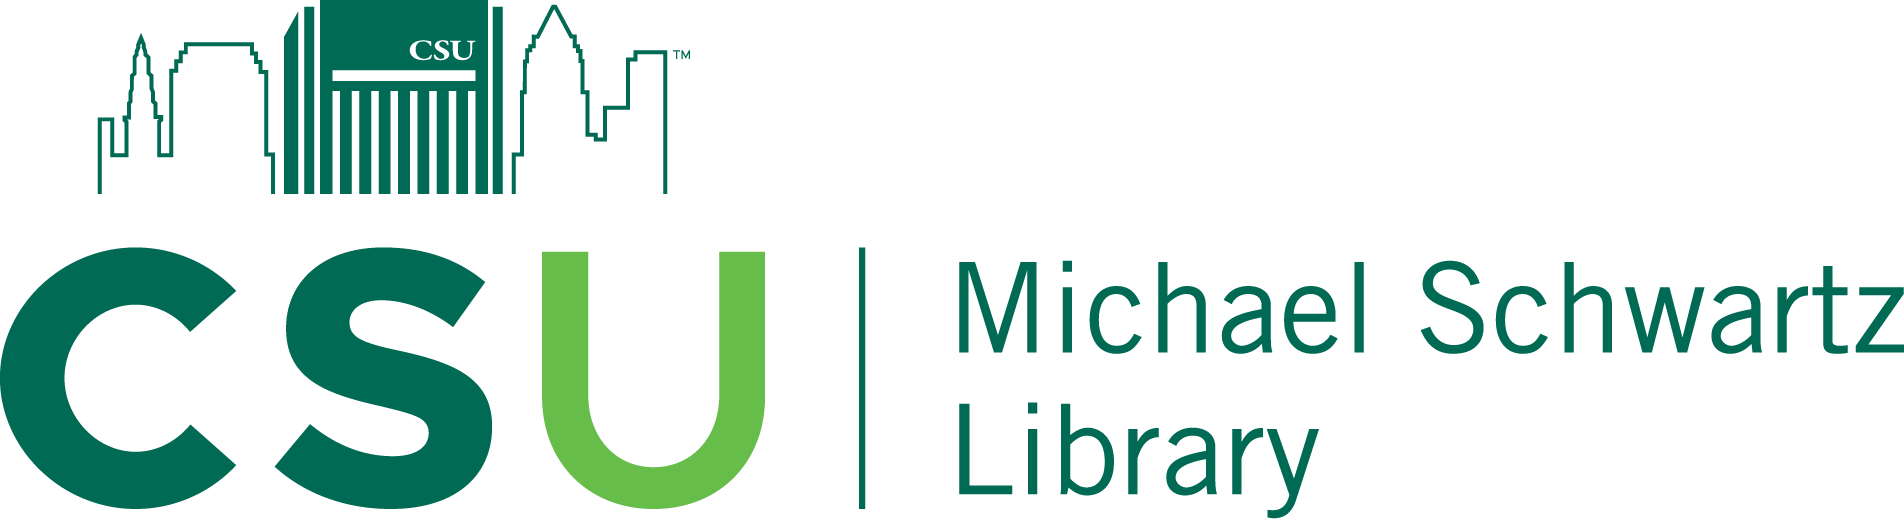 Michael Schwartz Library